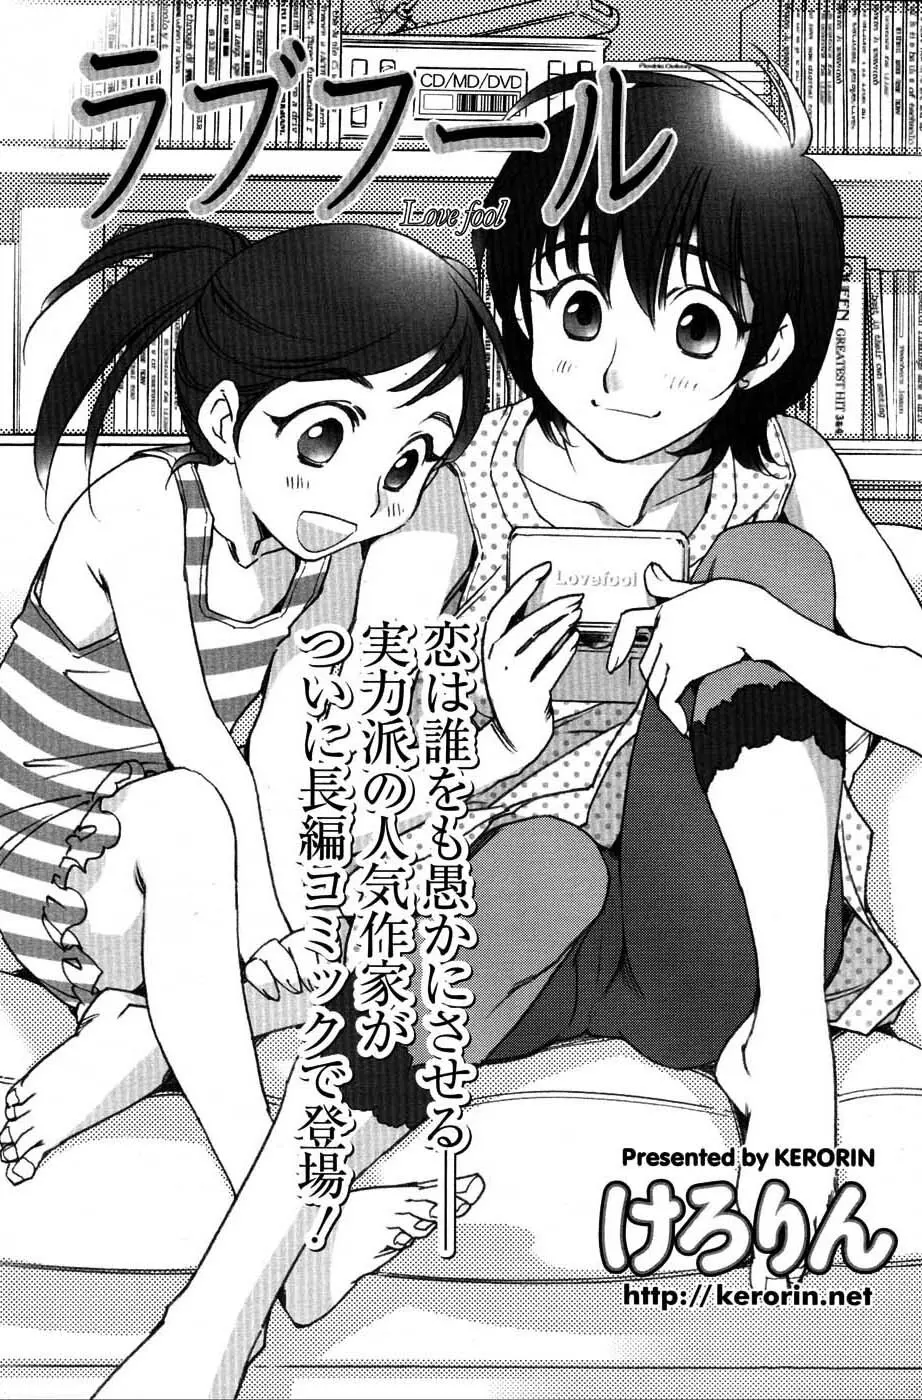 メンズヤングスペシャルIKAZUCHI雷 Vol.3 2007年9月号増刊 76ページ